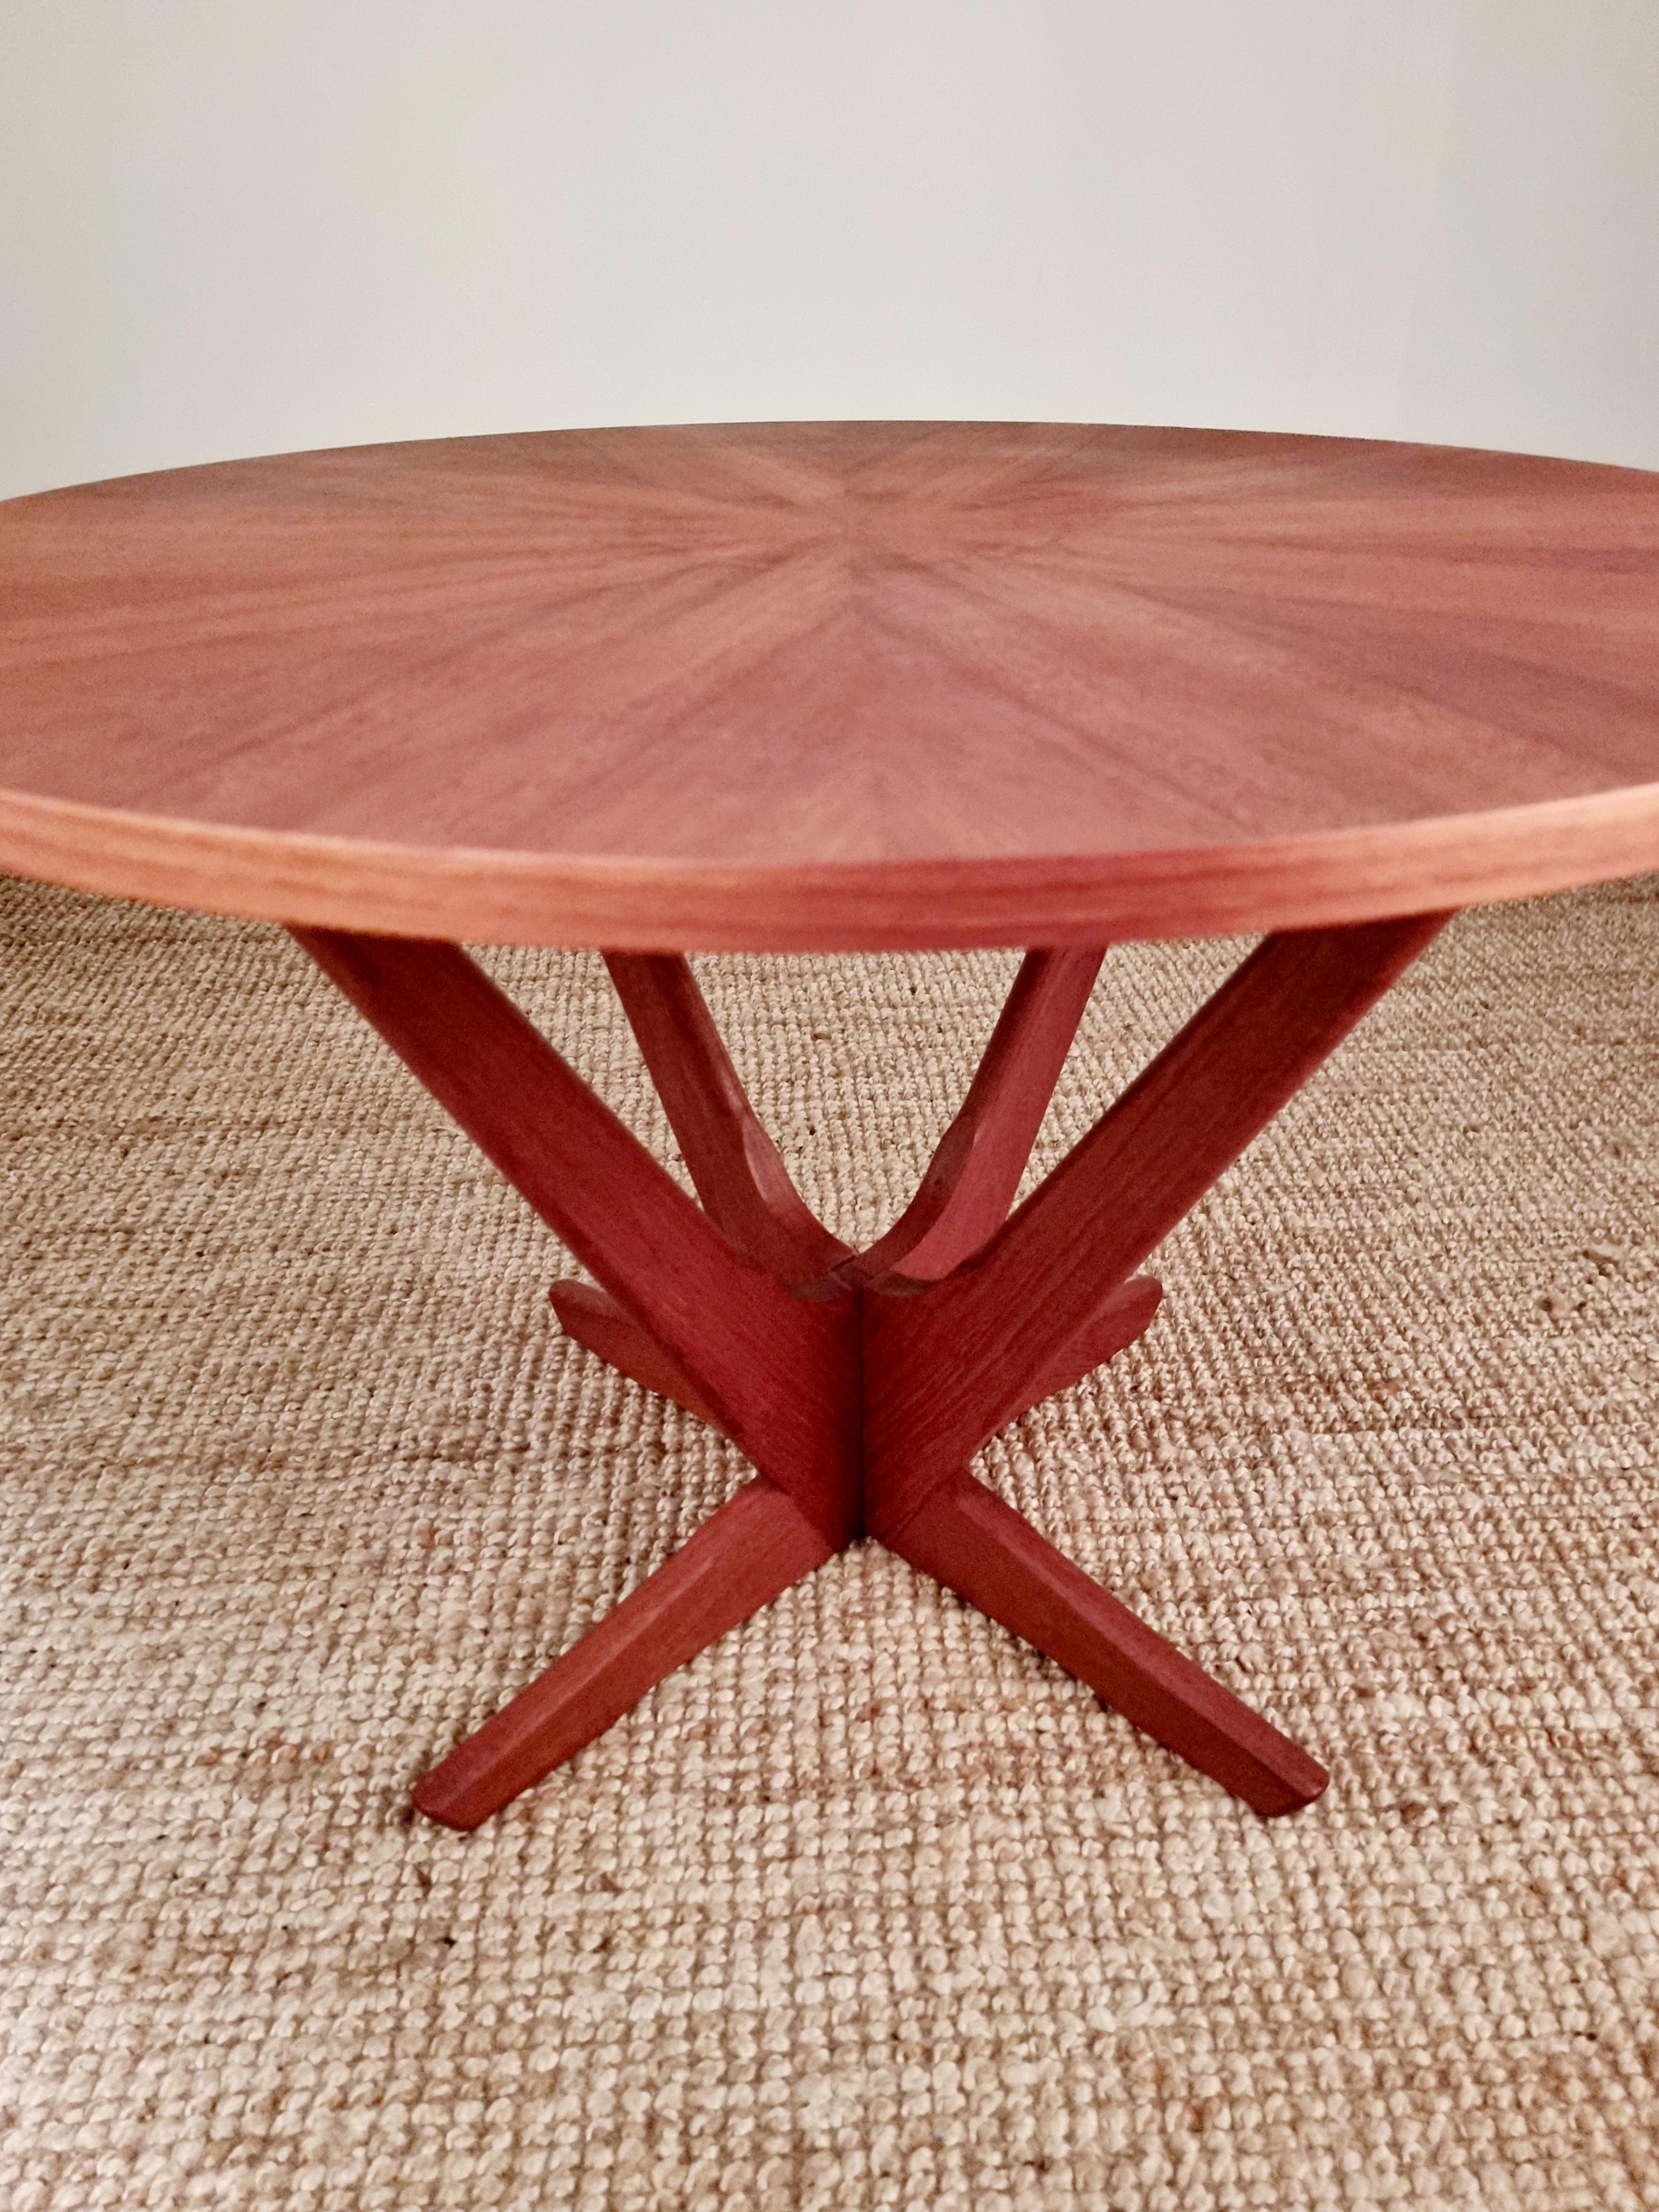 Søren Georg Jensen, coffee table 'Kubus' for Tønder Møbelfabrik, Midcentury For Sale 8